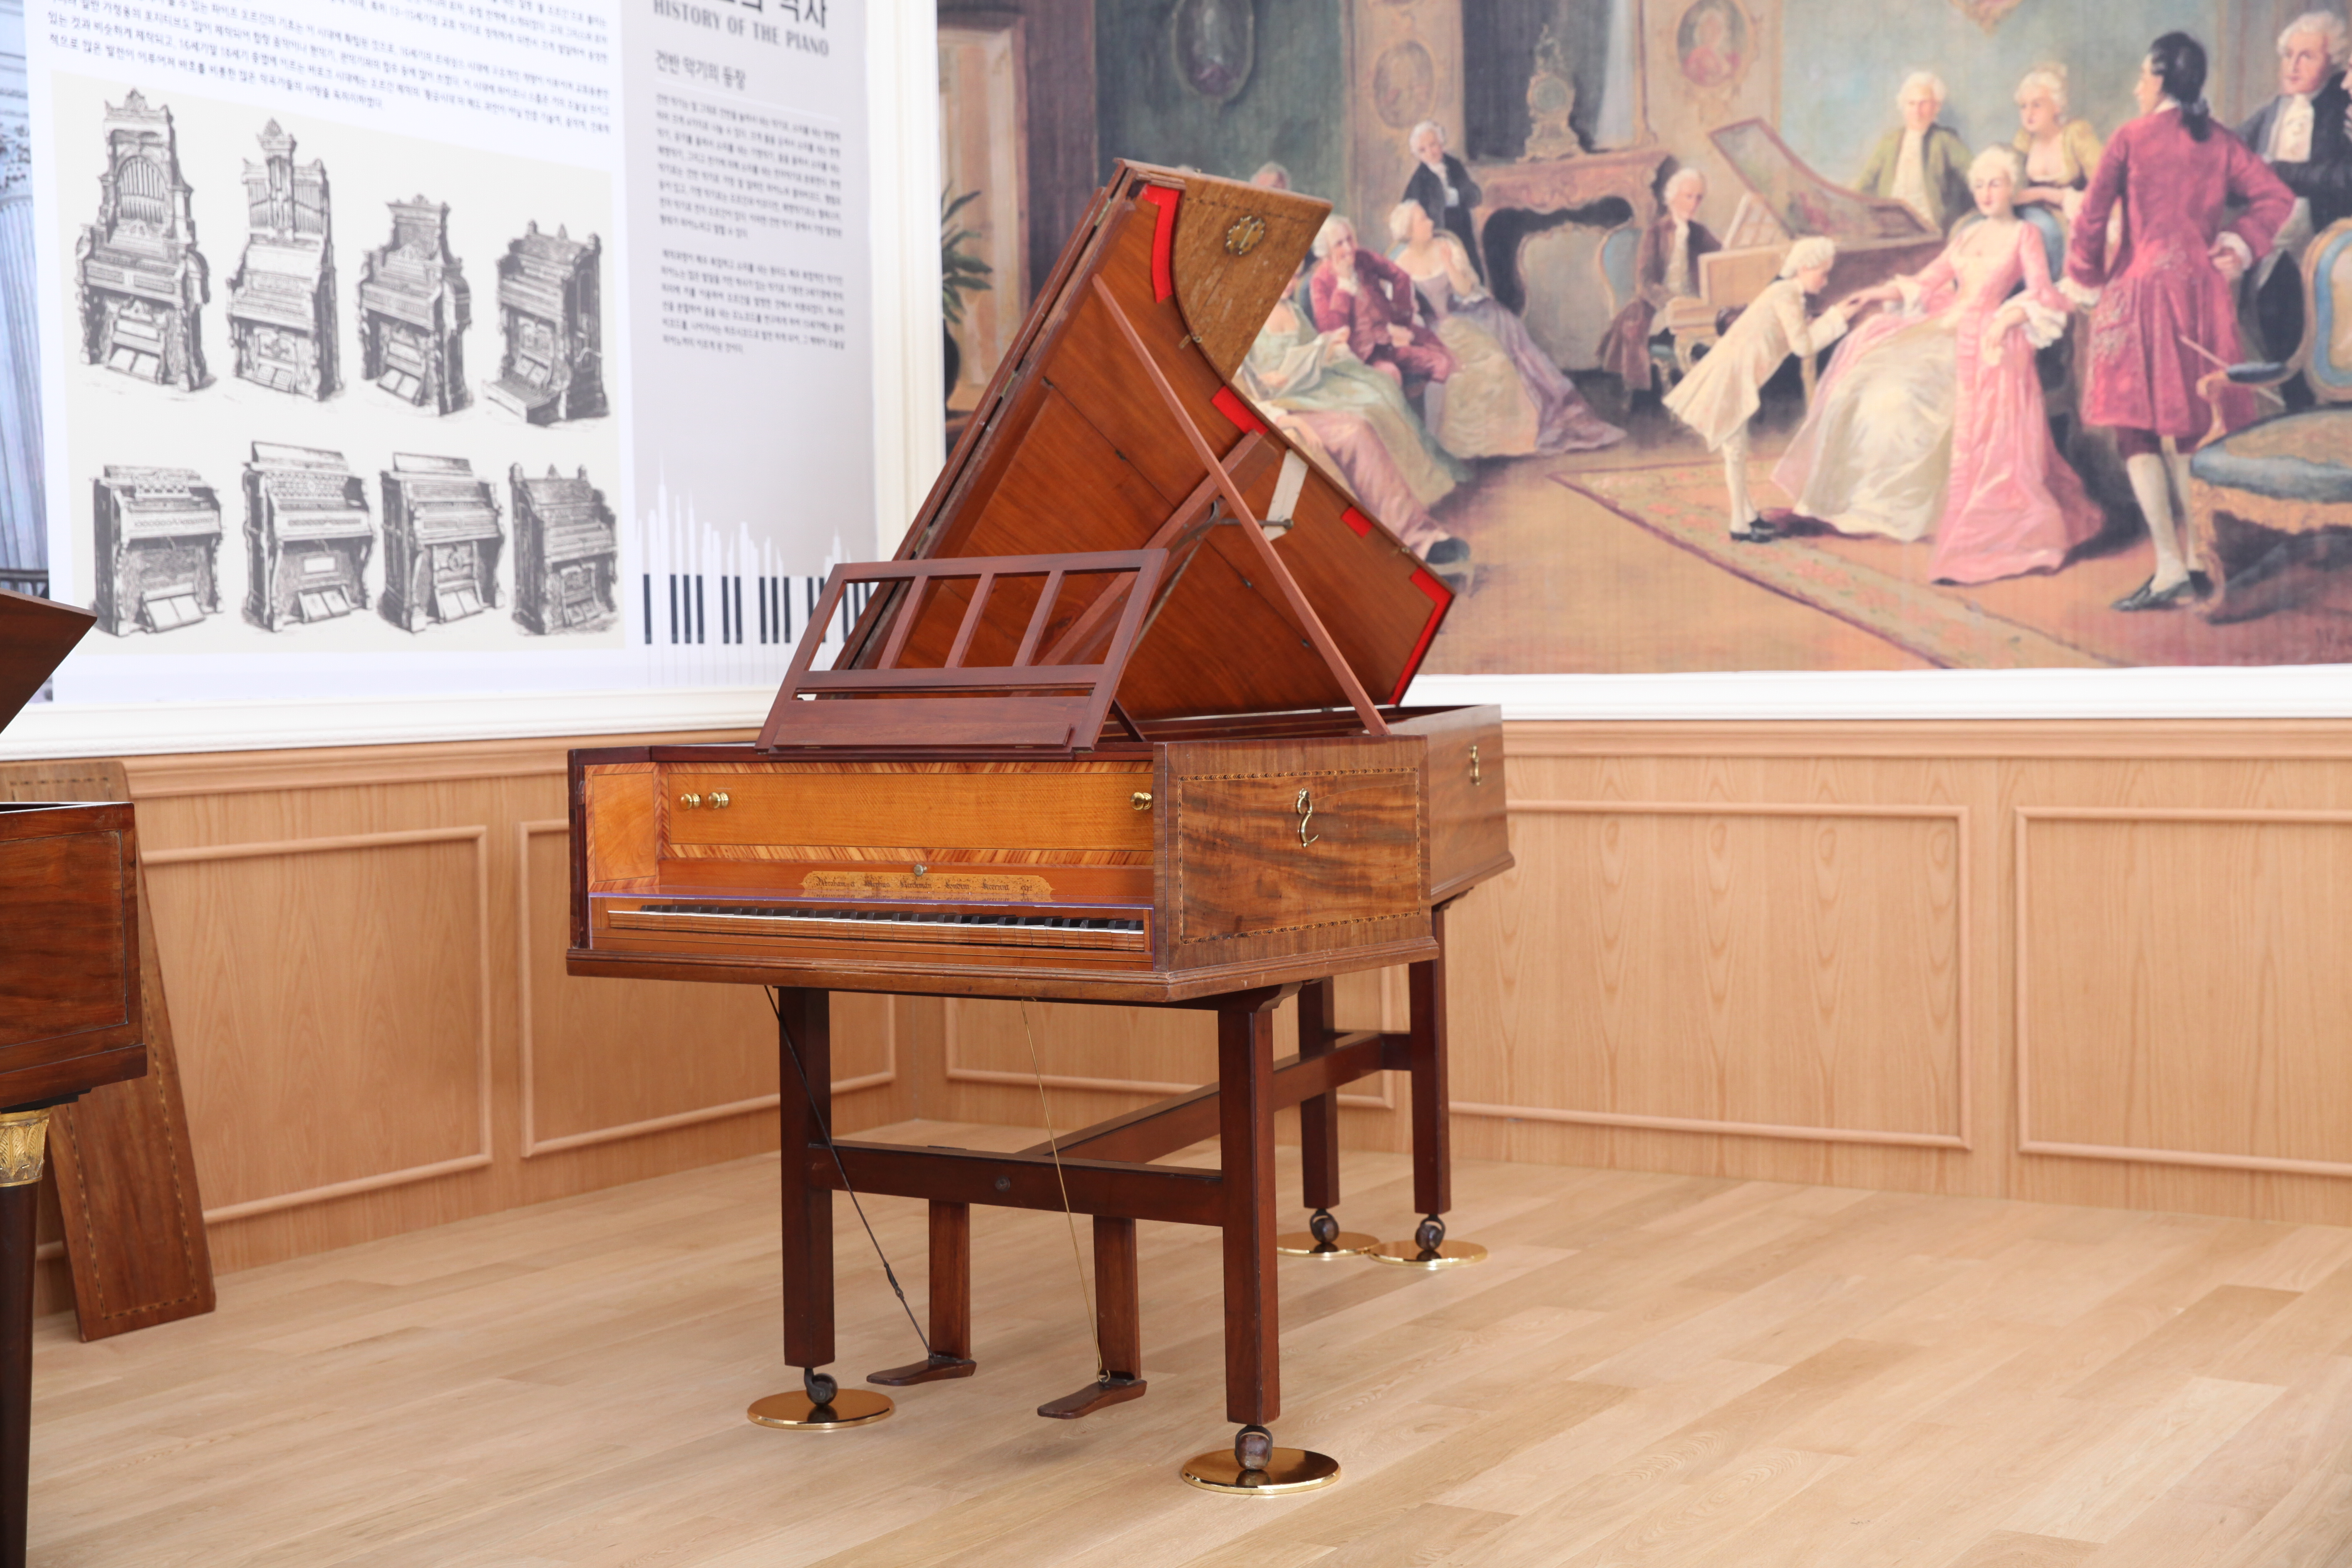 제주 서귀포시 세계자동차&피아노박물관이 소장하고 있는 국내 유일 18세기 오리지널 하프시코드. 1792년 영국 장인 에이브러햄 커크먼과 그의 아들 조지프가 제작했다.  세계자동차&피아노박물관 제공  